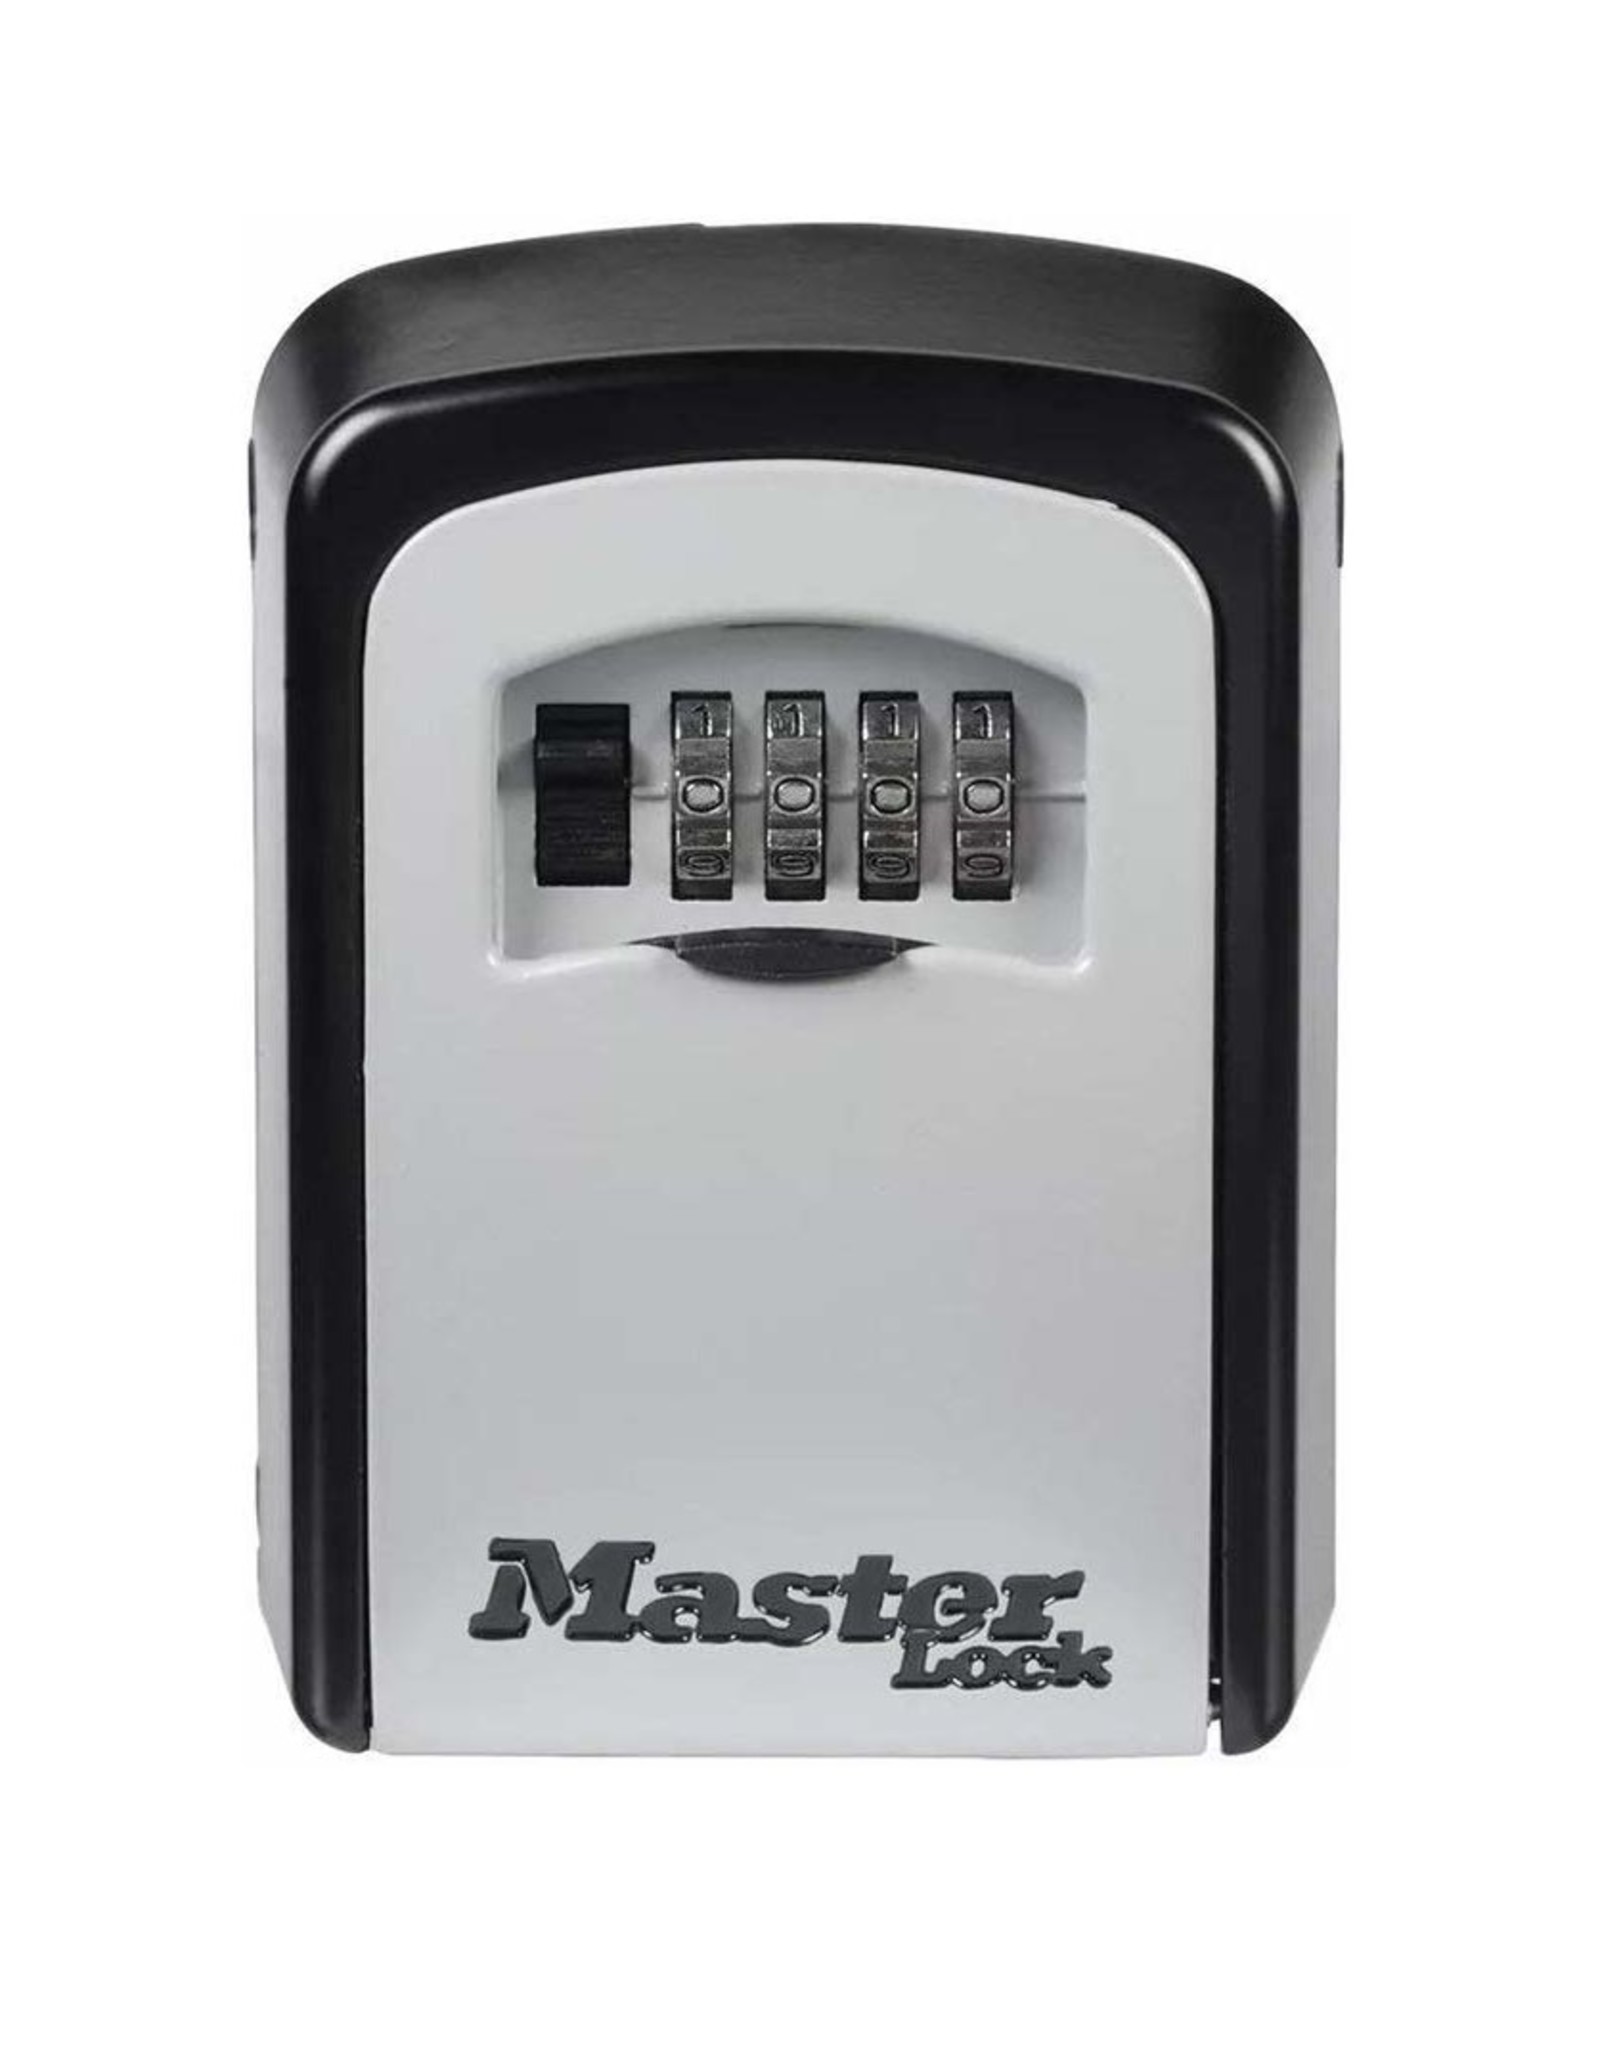 MasterLock - Sleutelkluis 5401D - Voor 5 - Parya webshop